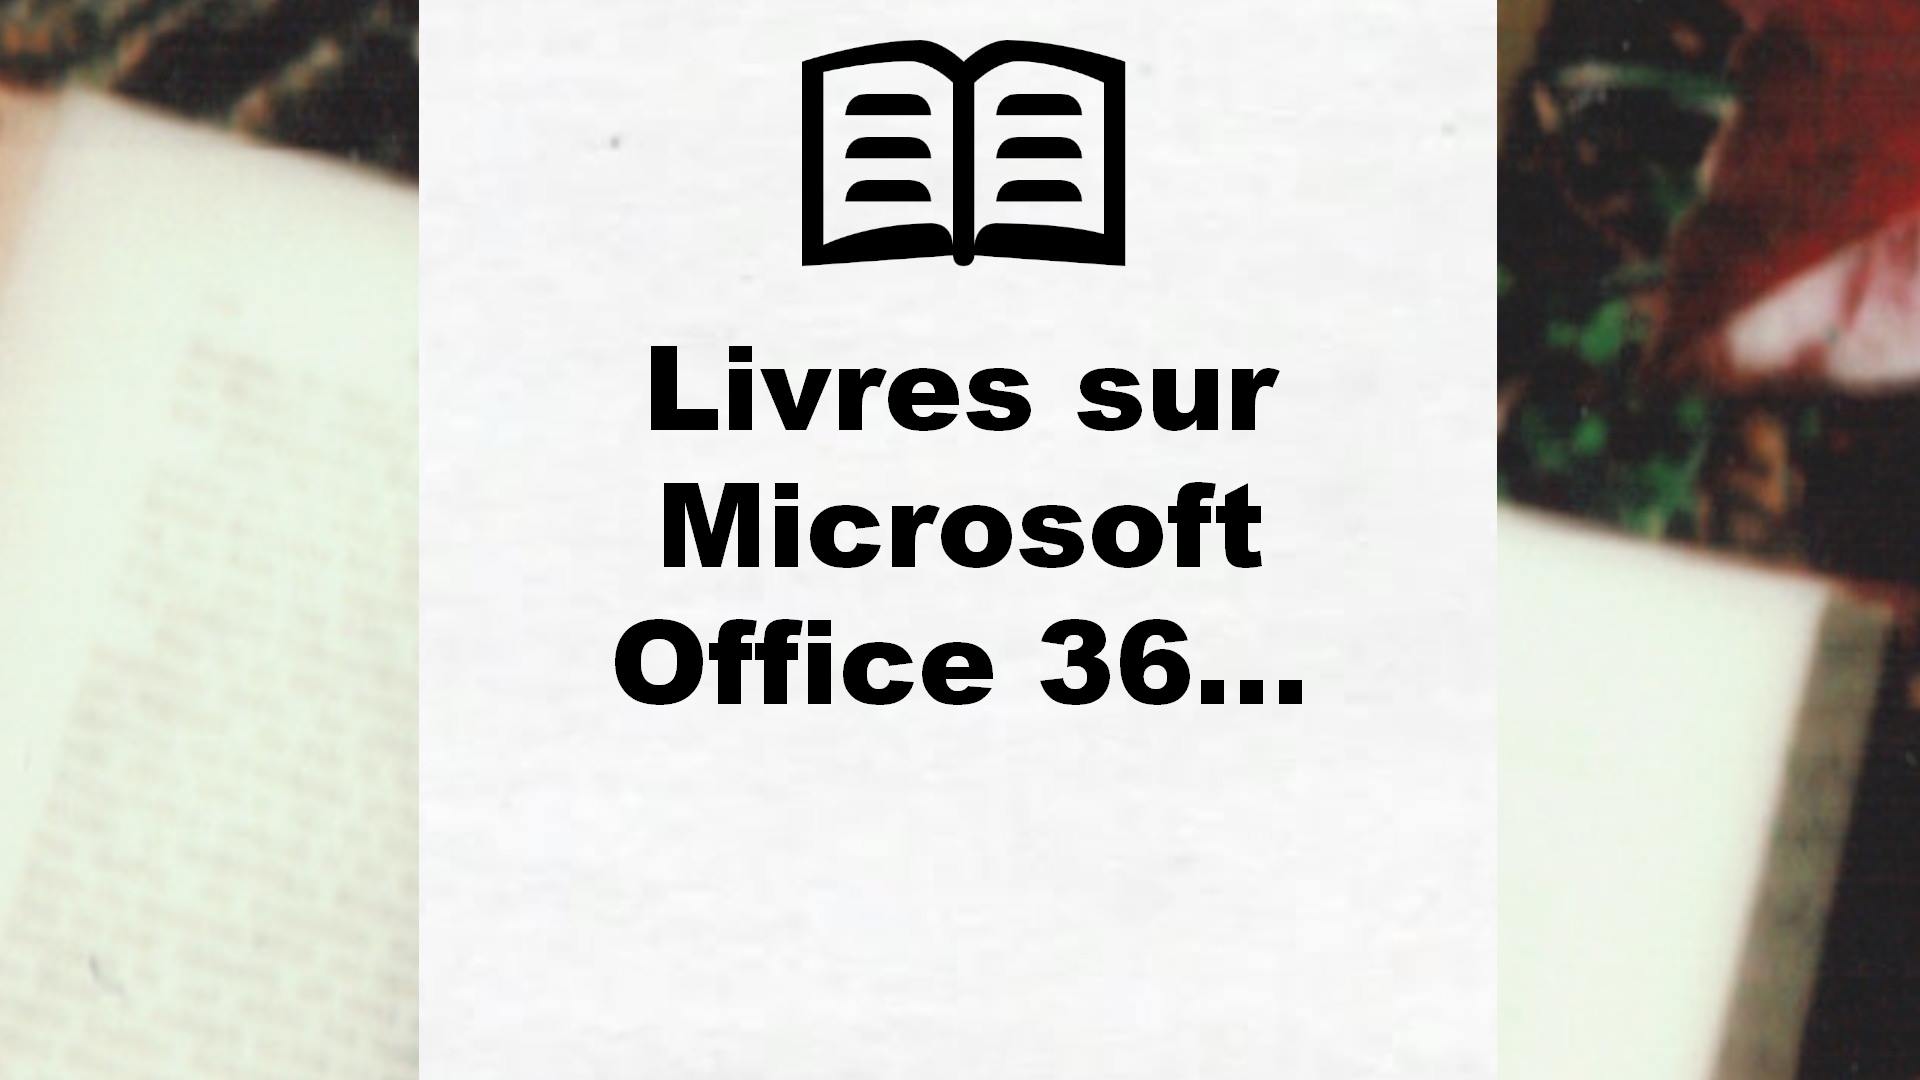 Livres sur Microsoft Office 365